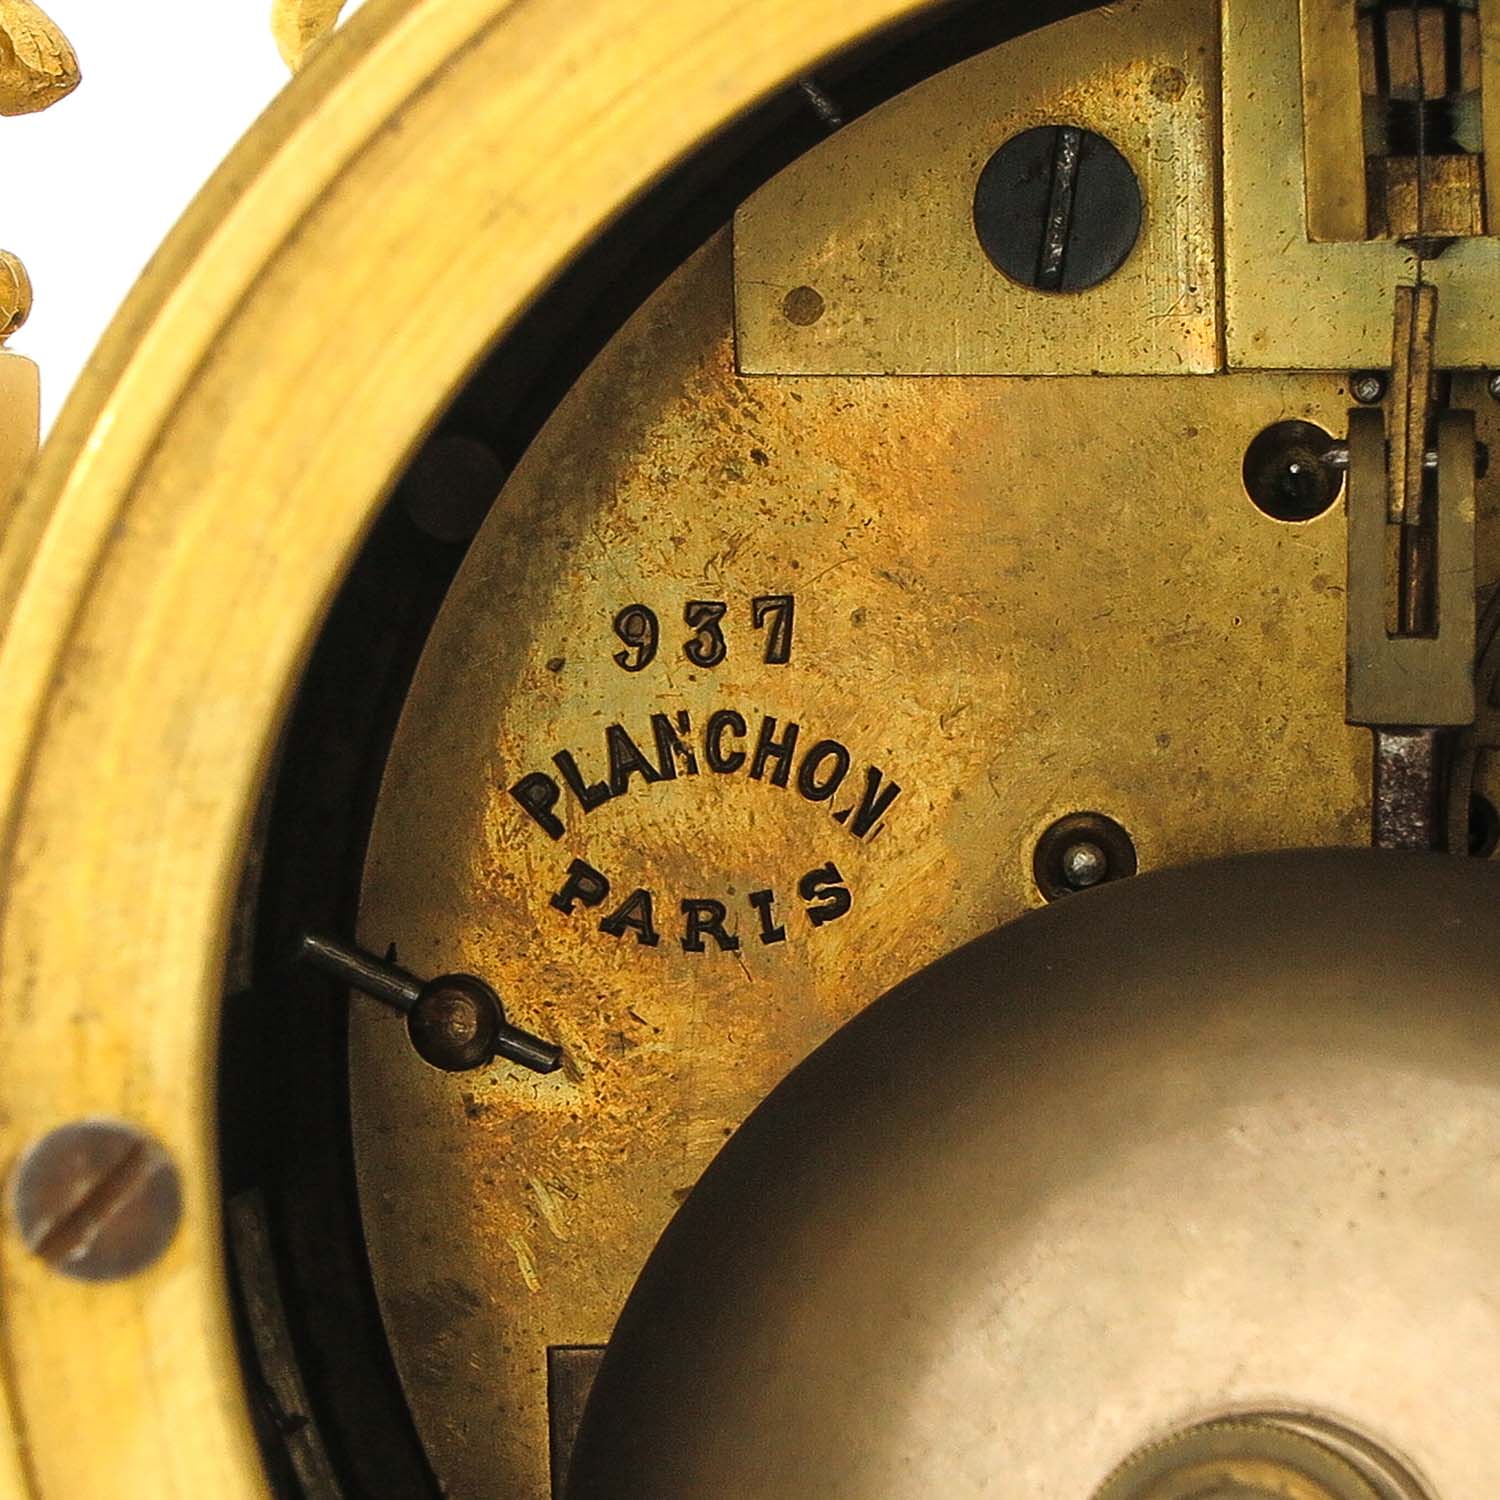 A Planchon Paris Clock Set - Image 8 of 10